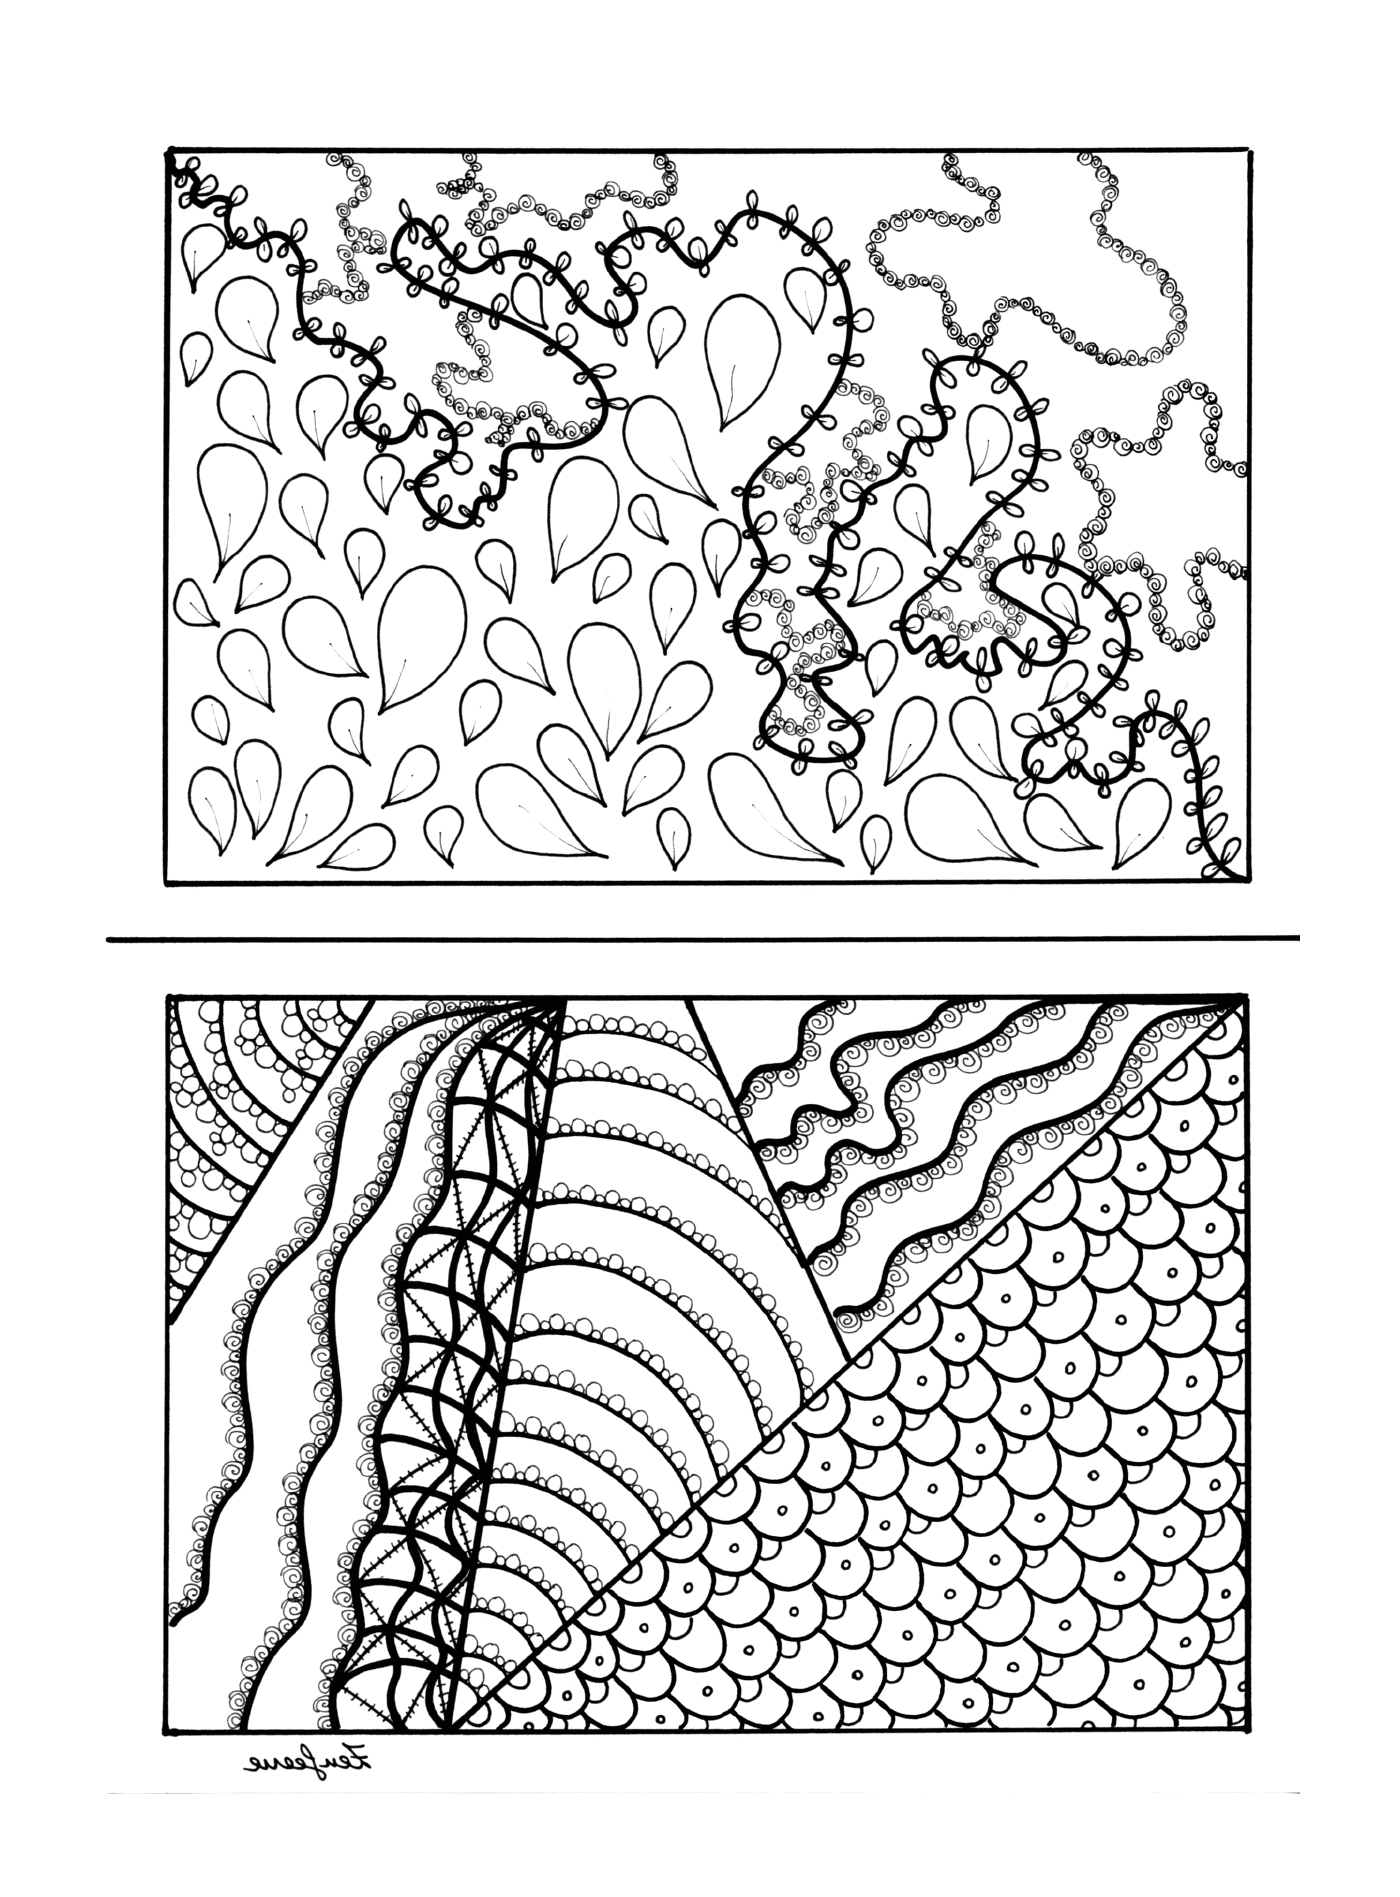  Черные и белые рисунки растения и водонапорной башни 